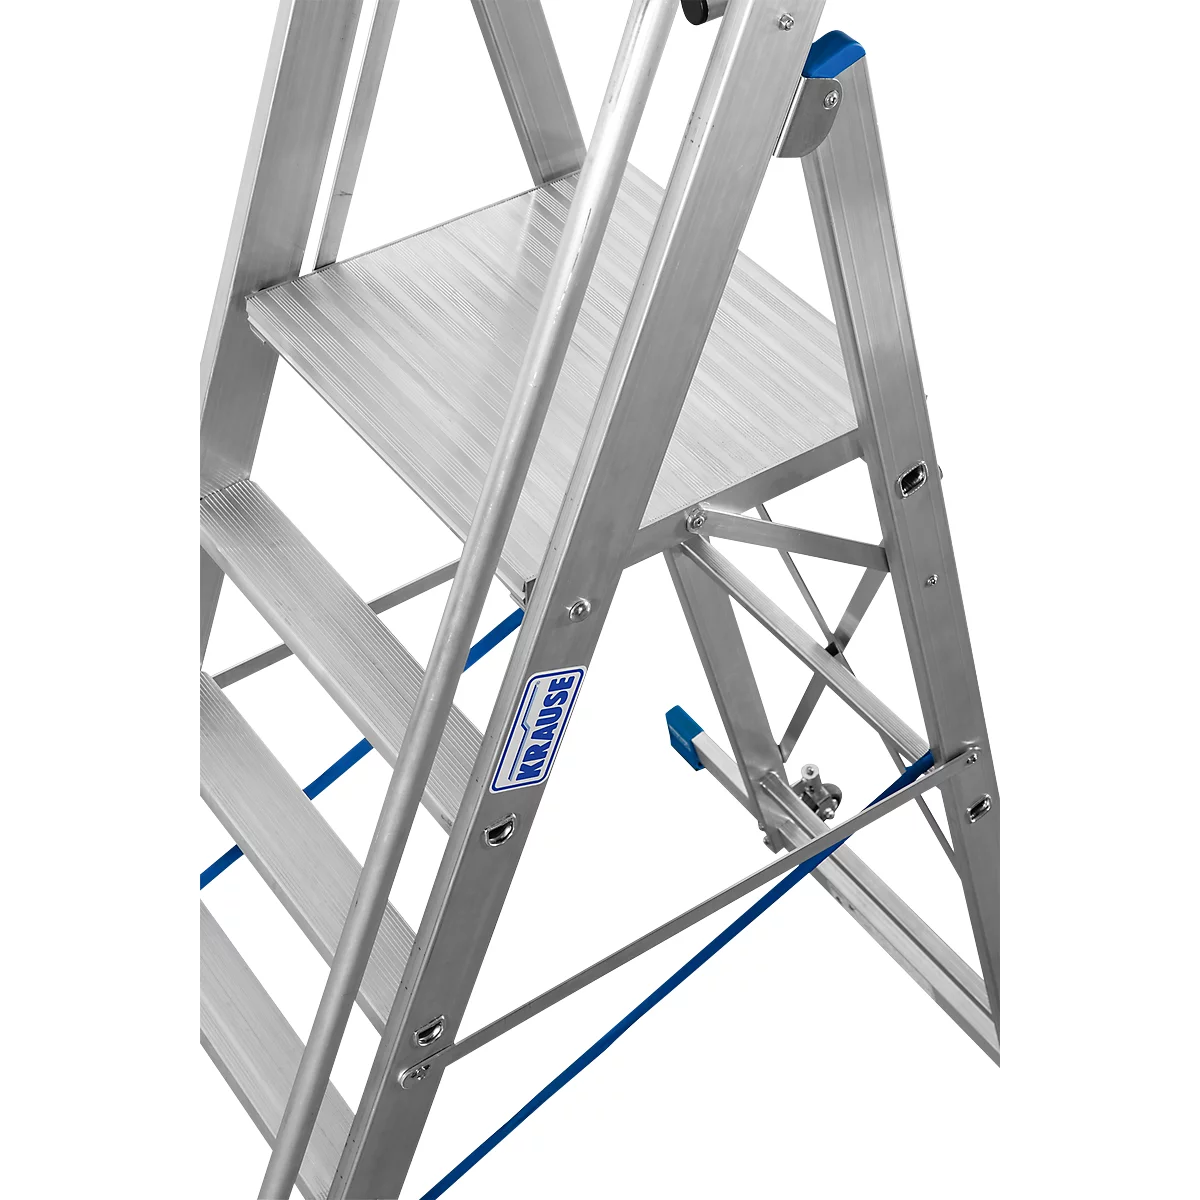 Escalera de tijera de aluminio, con gran plataforma de apoyo, con arco de seguridad y cadena, 7 escalones